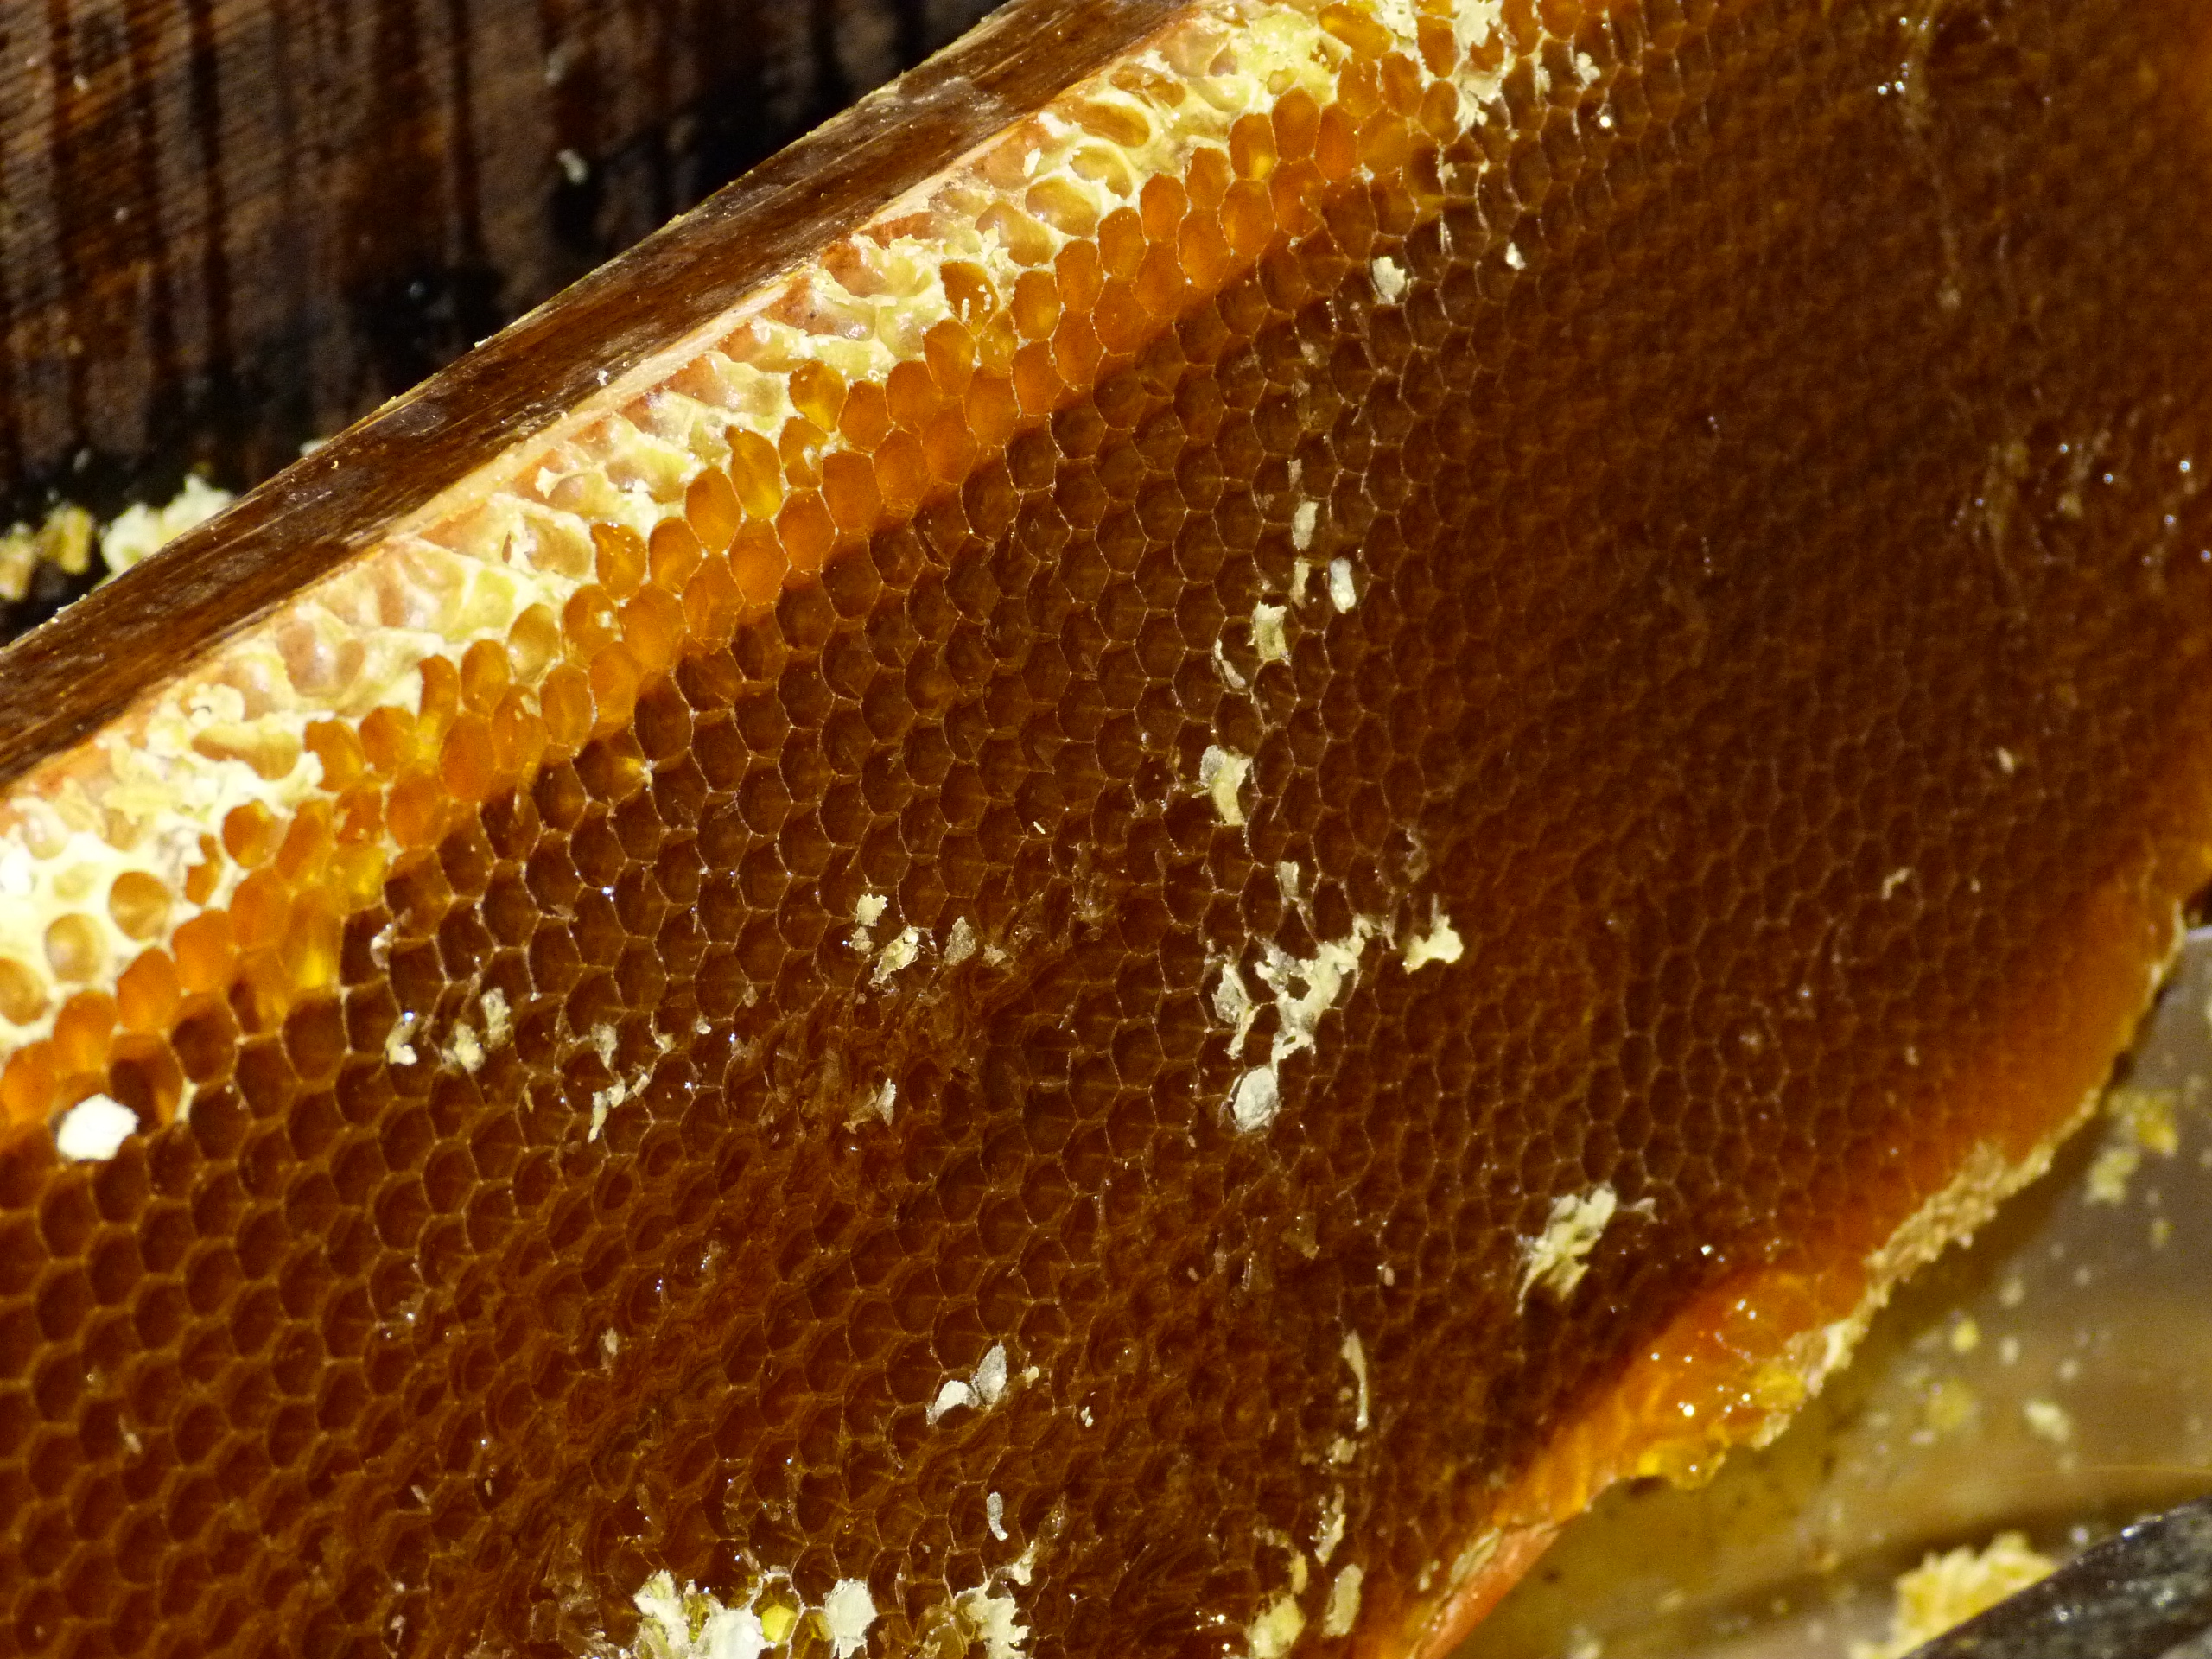 Сколько делать мед